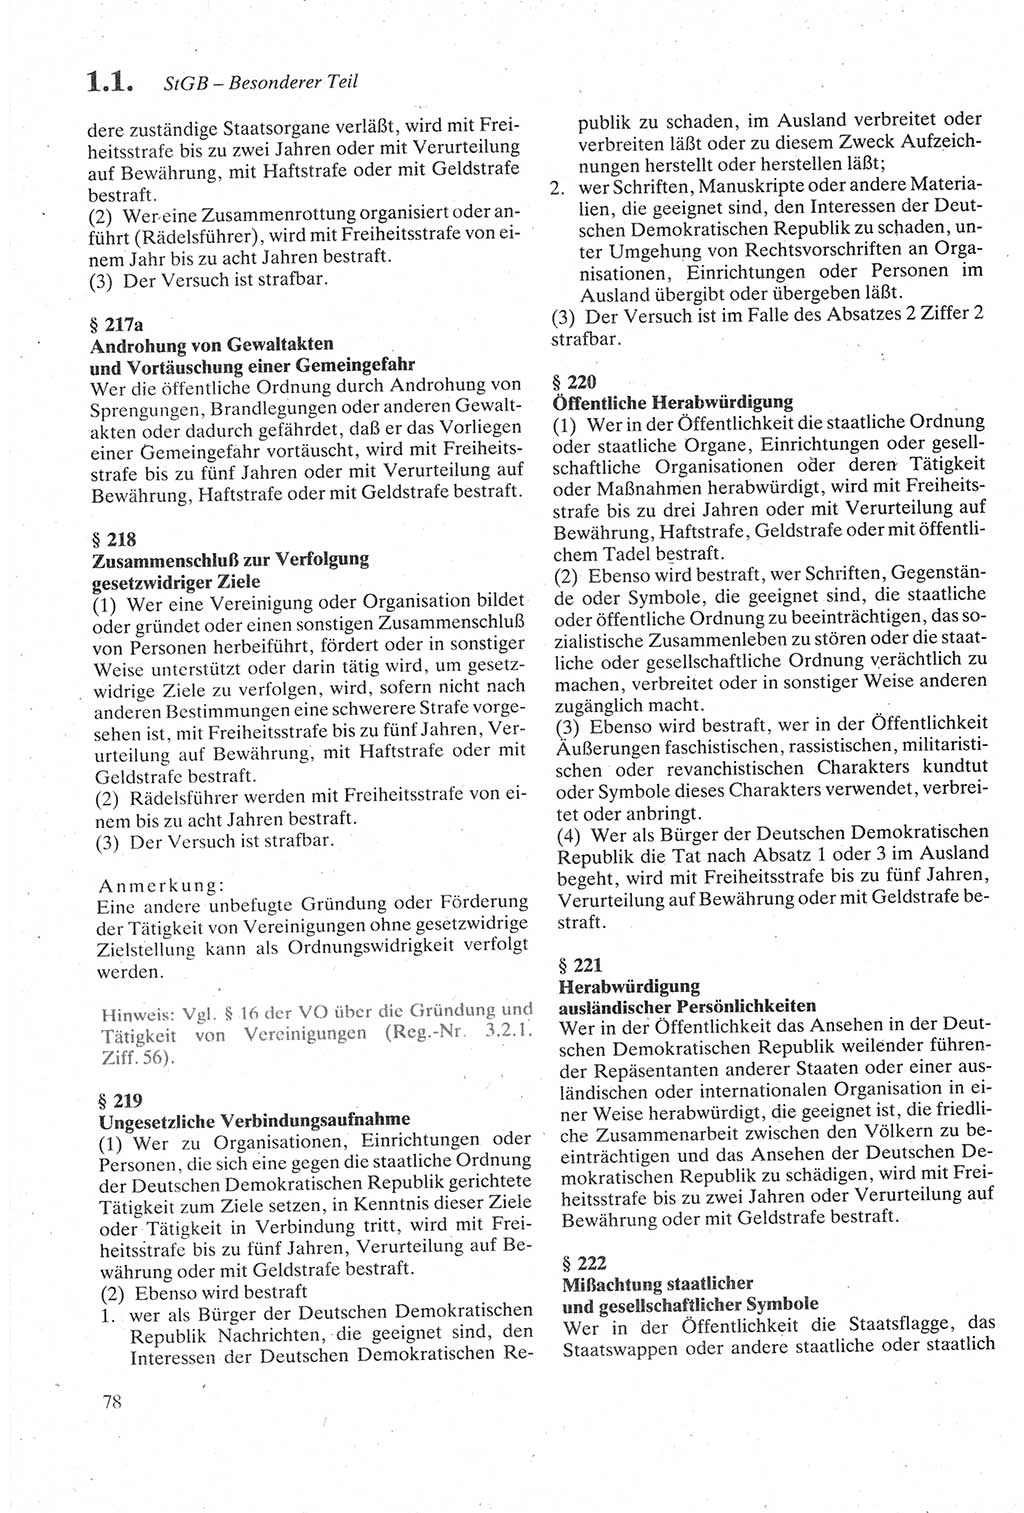 Strafgesetzbuch (StGB) der Deutschen Demokratischen Republik (DDR) sowie angrenzende Gesetze und Bestimmungen 1979, Seite 78 (StGB DDR Ges. Best. 1979, S. 78)